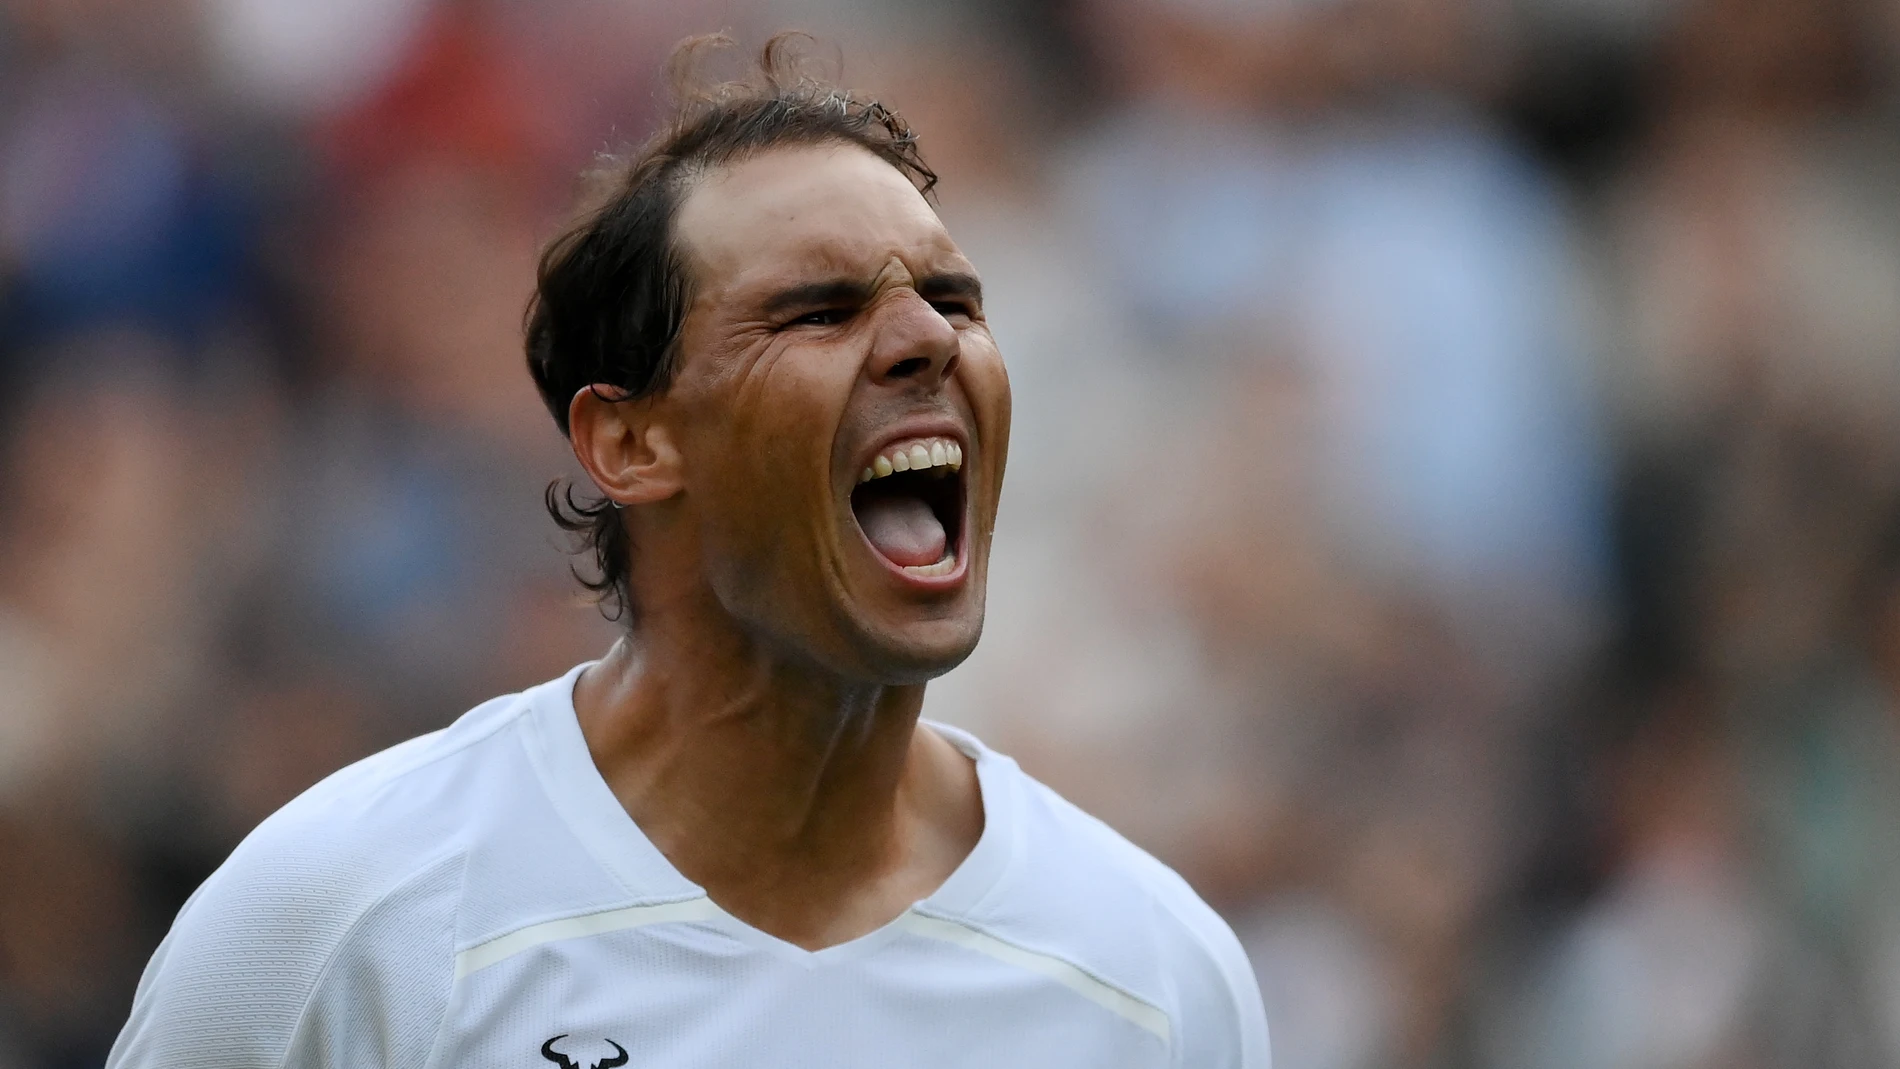 Rafa Nadal - Botic van de Zandschulp: Campeonato de Wimbledon, en directo